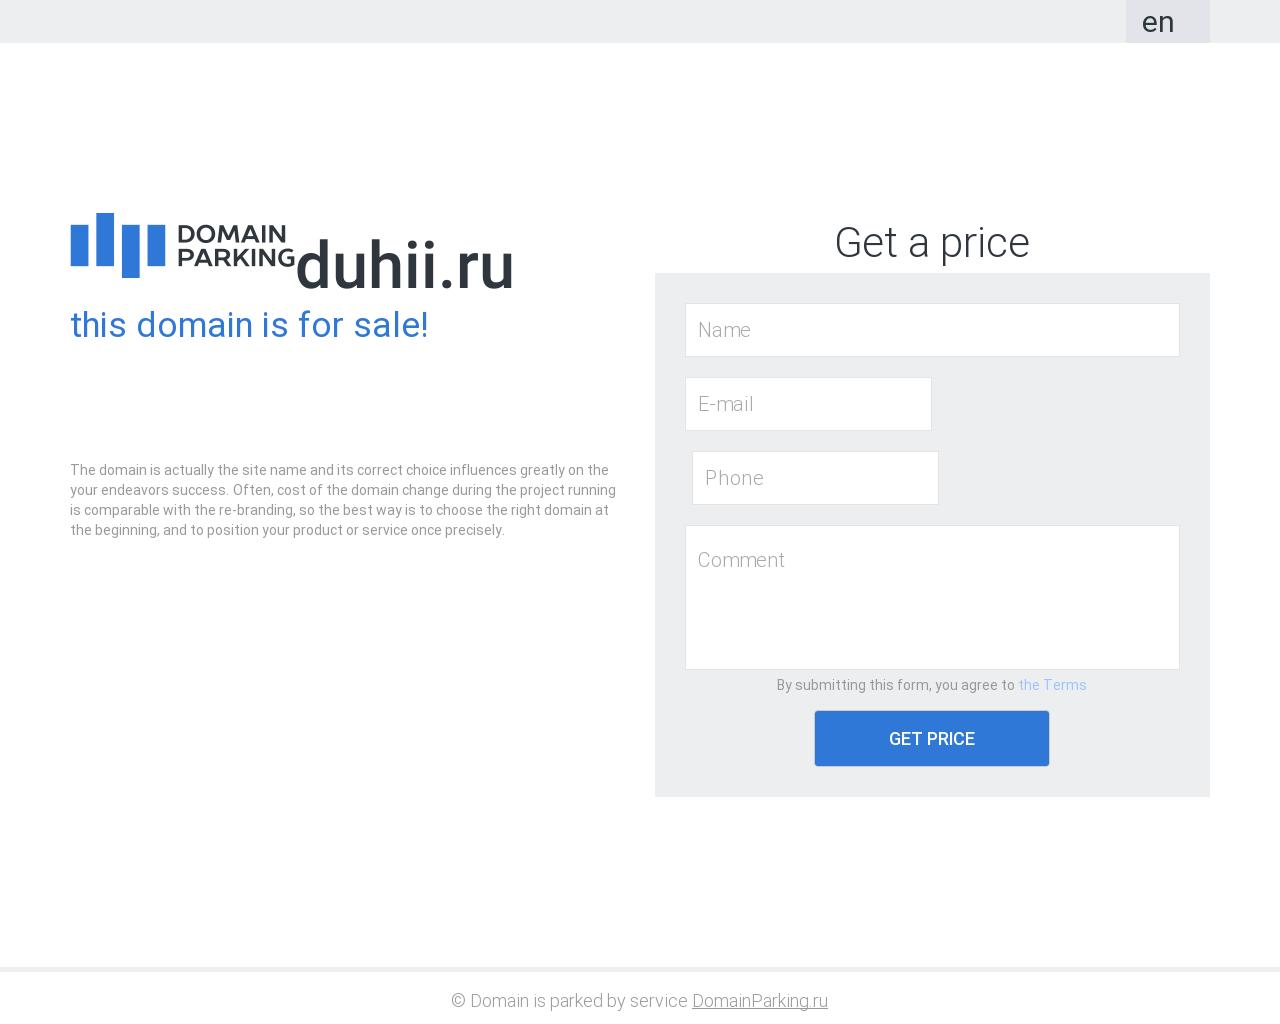 Изображение сайта duhii.ru в разрешении 1280x1024